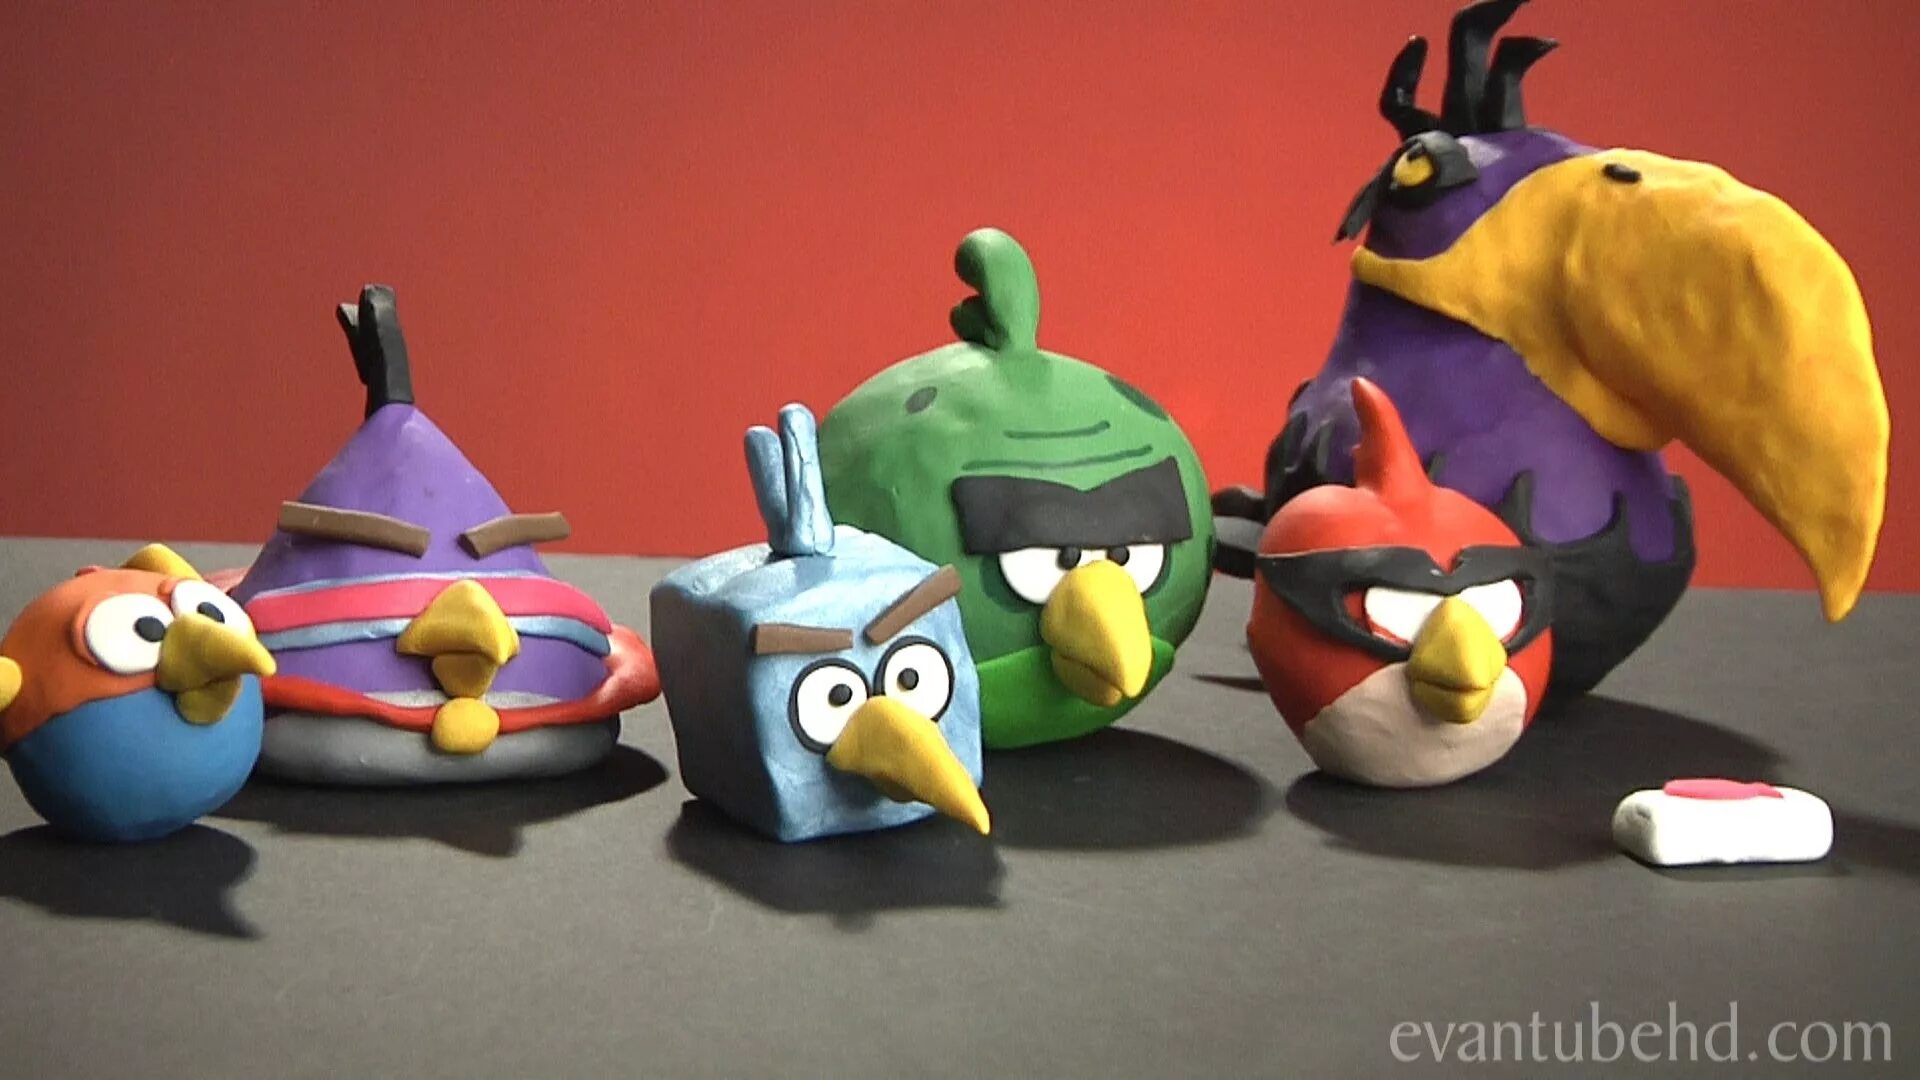 Angry birds eagle. Angry Birds Space Plush Toys. Энгри бердз пластилин. Angry Birds Mighty Eagle Plush. Птички Энгри бердз пластилин.